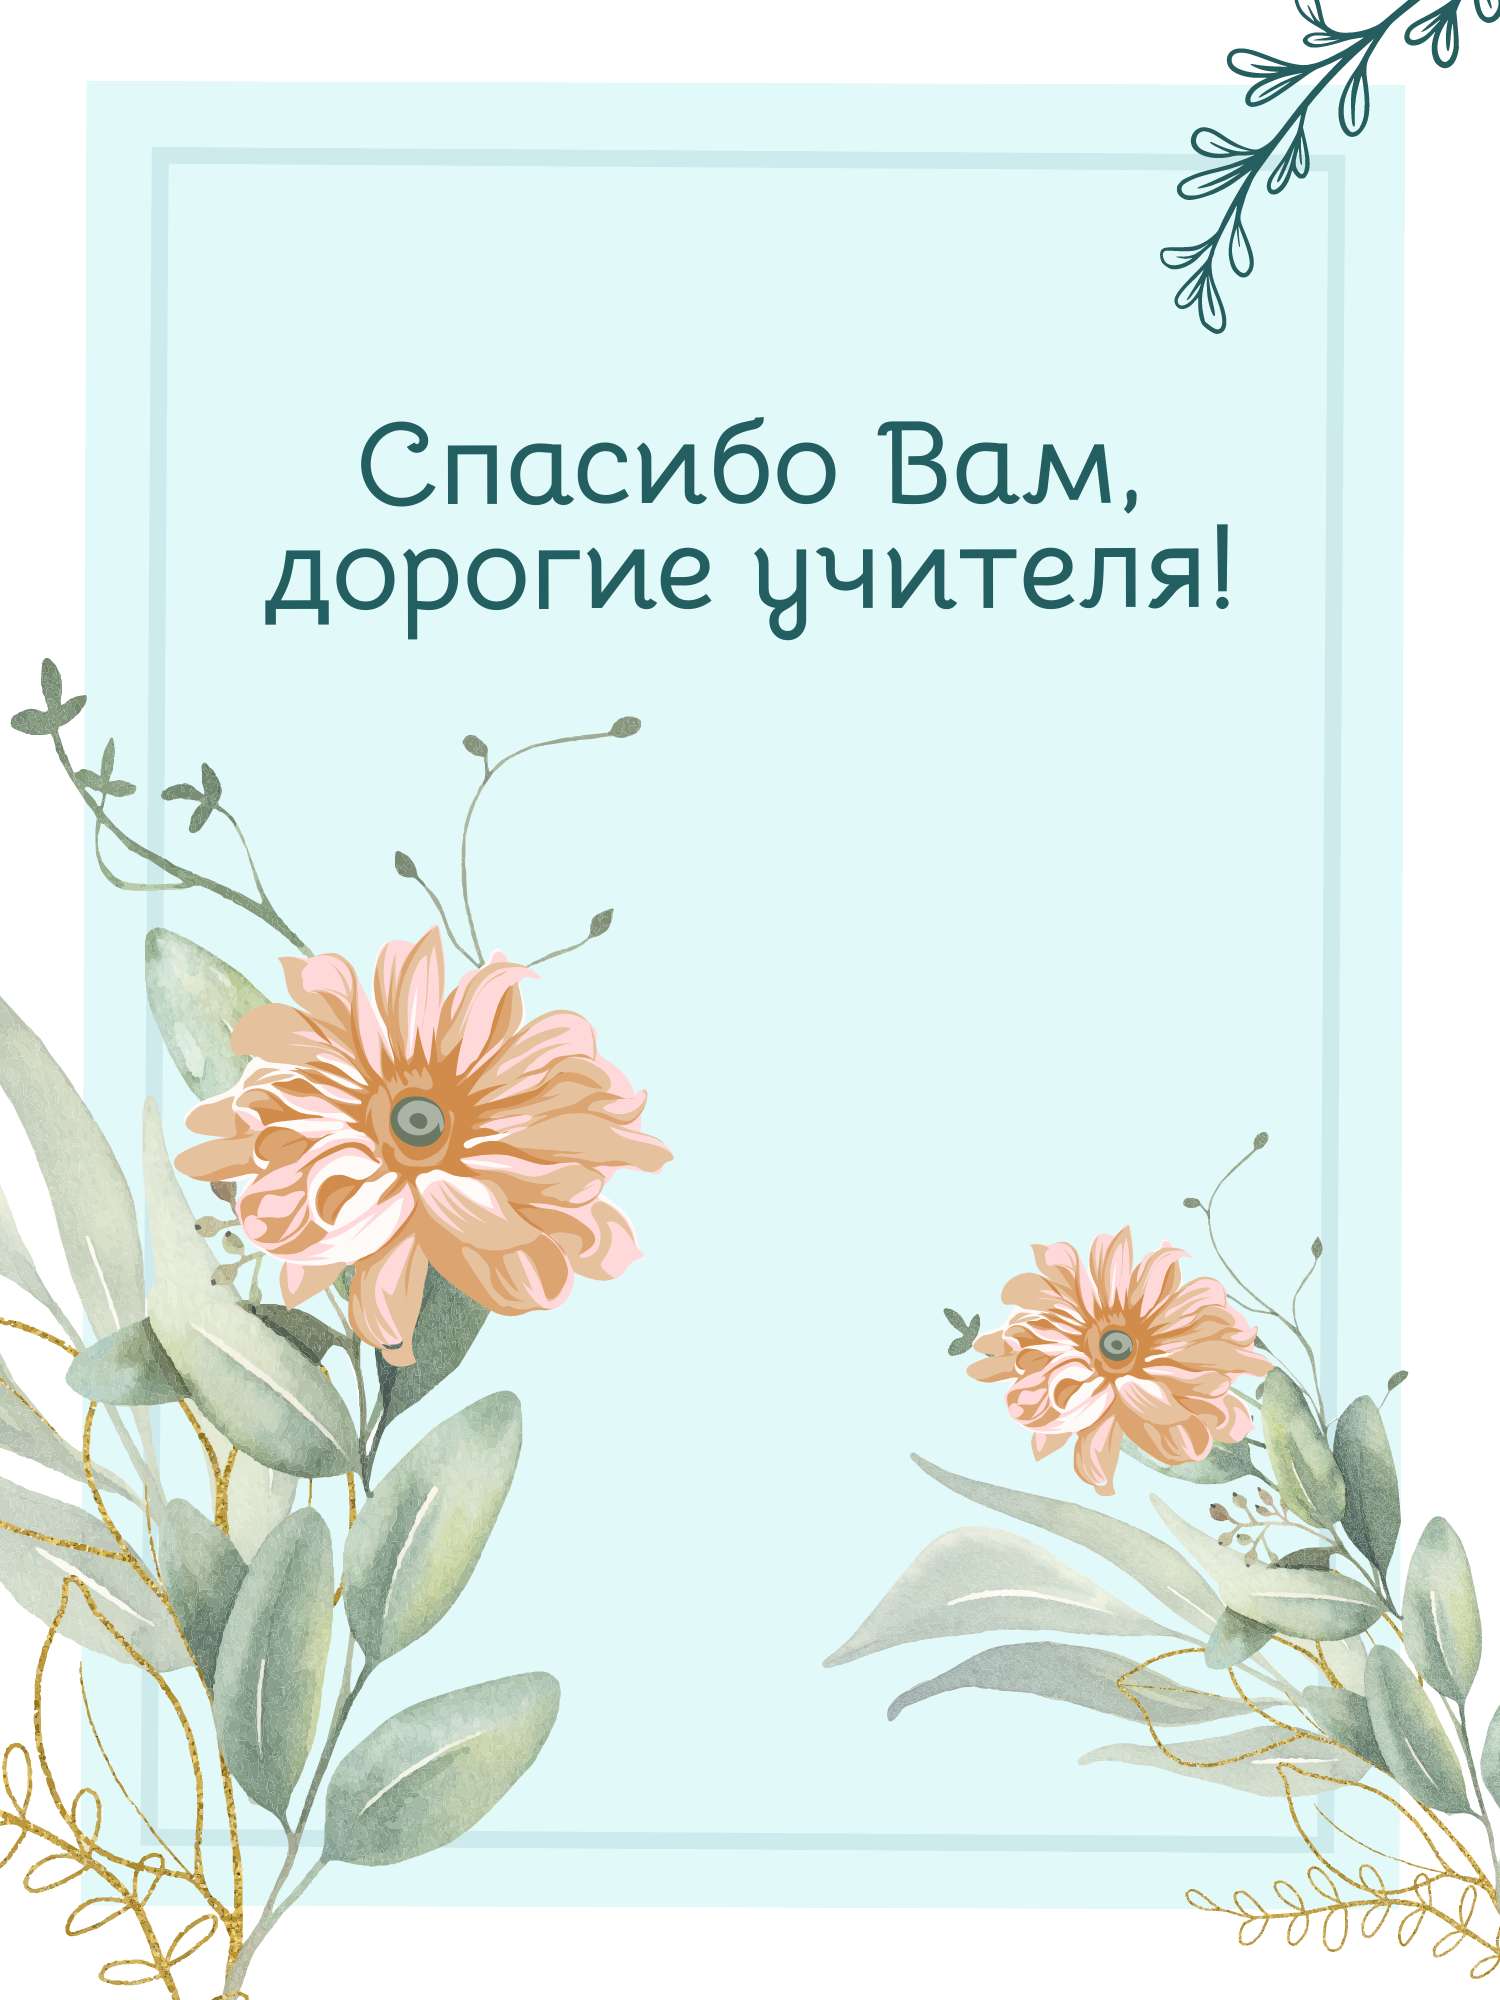 Нарисованная открытка  в день учителя в светло-голубых цветах с акварельными георгинами